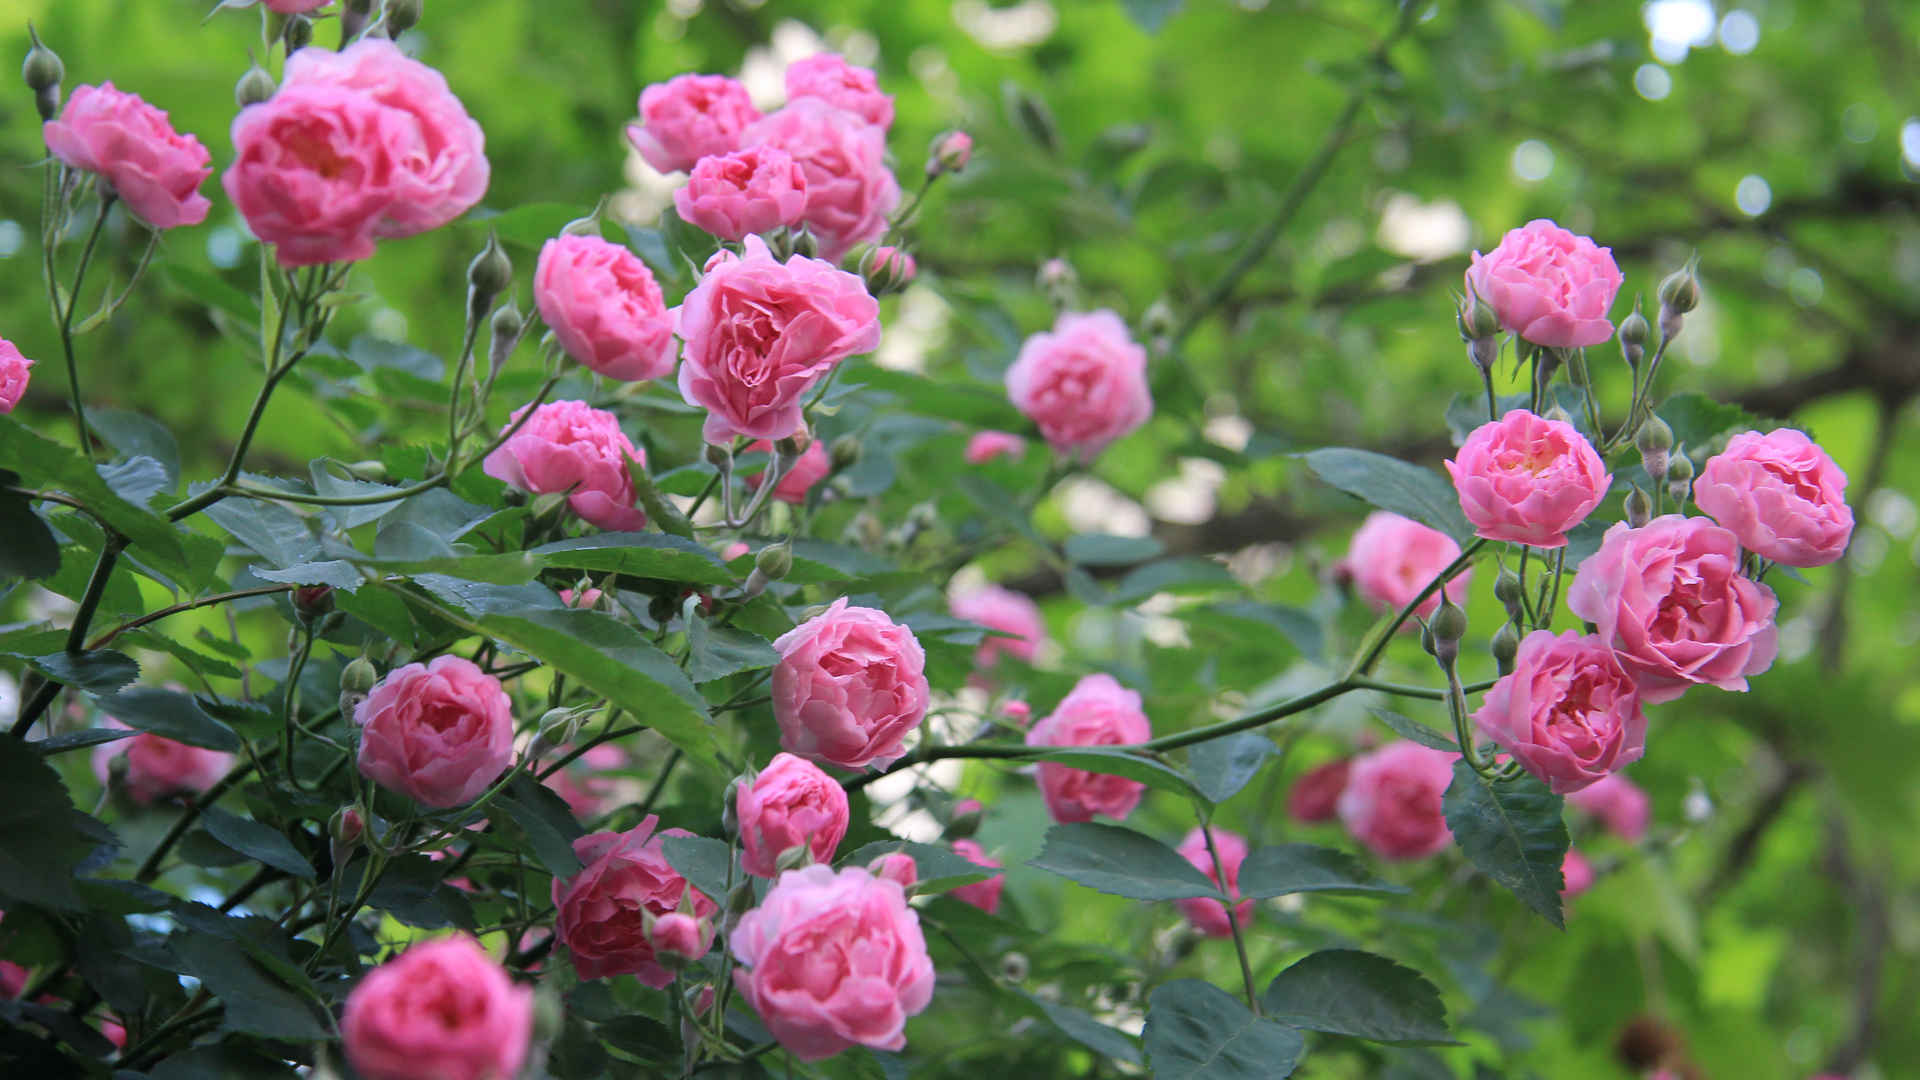 粉色漂亮玫瑰花朵高清桌面壁纸-壁纸图片大全